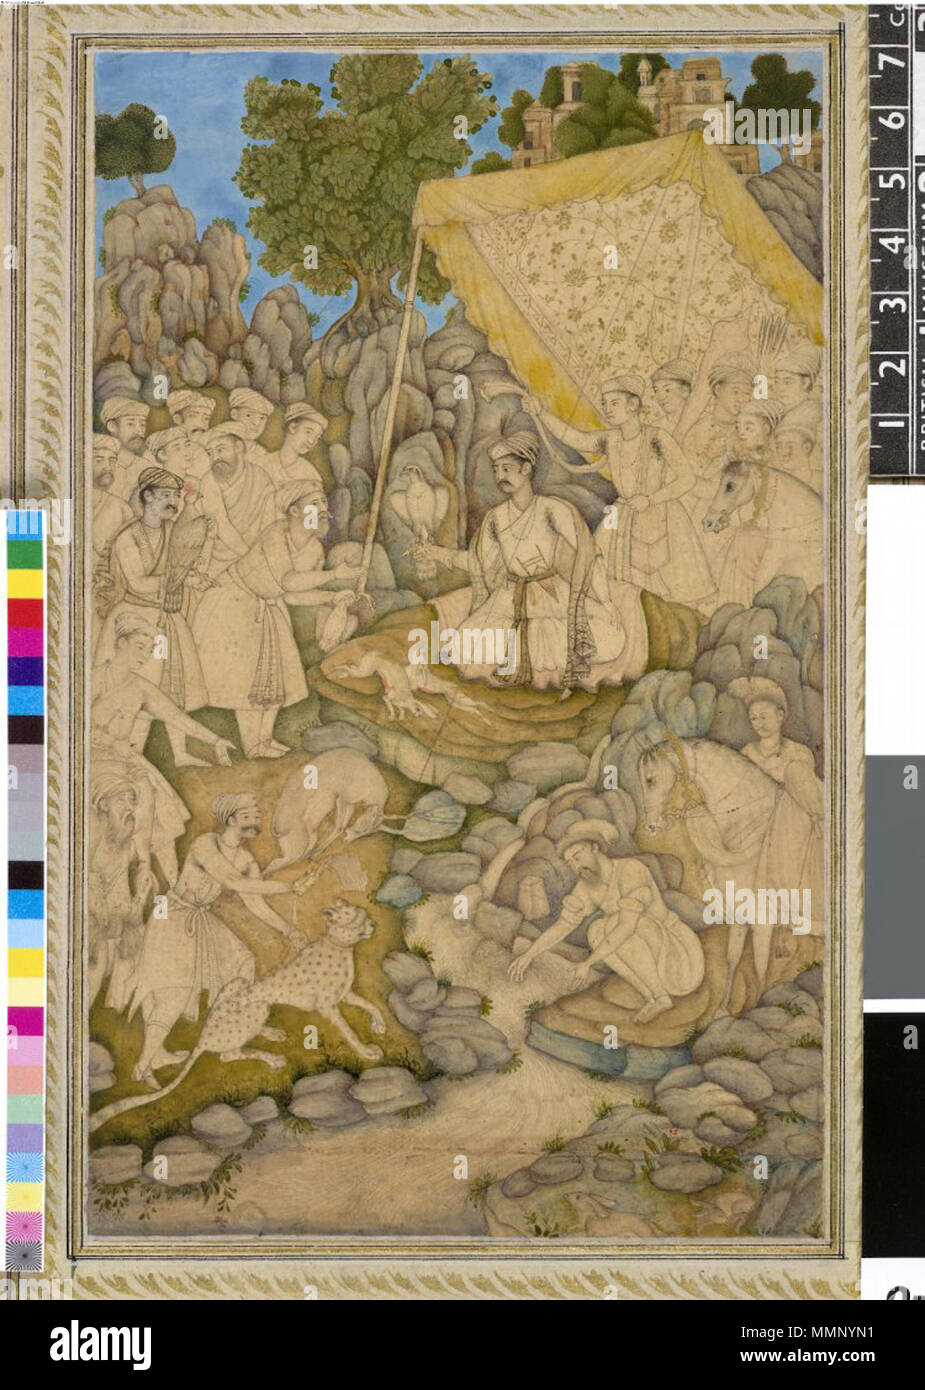 . Englisch: Alexander ruht auf einer Hütte Mughal India, C. 1605 eingeschrieben auf dem Berg: ikandar Shah "Tinte, Gold und Aquarell auf Papier die Kombination von Zeichnung und Malerei in einer Arbeit wurde in Mughal India beliebt im späten 16. und frühen 17. Jahrhunderts. Der Künstler hat die Landschaft gemalt hat aber nur einen Hauch von Farbe auf den menschlichen und tierischen Abbildung unter dem Vordach hinzugefügt. Obwohl er als Alexander der Große gekennzeichnet ist, ist er gekleidet und bewaffnet als Mughal. . Ca. 1605. Moghul-stil 21A Prince (gekennzeichnet als Alexander der Große) erhält einen Beutel nach der Jagd beim Sitzen unter dem Vordach mit Falcon auf Stockfoto